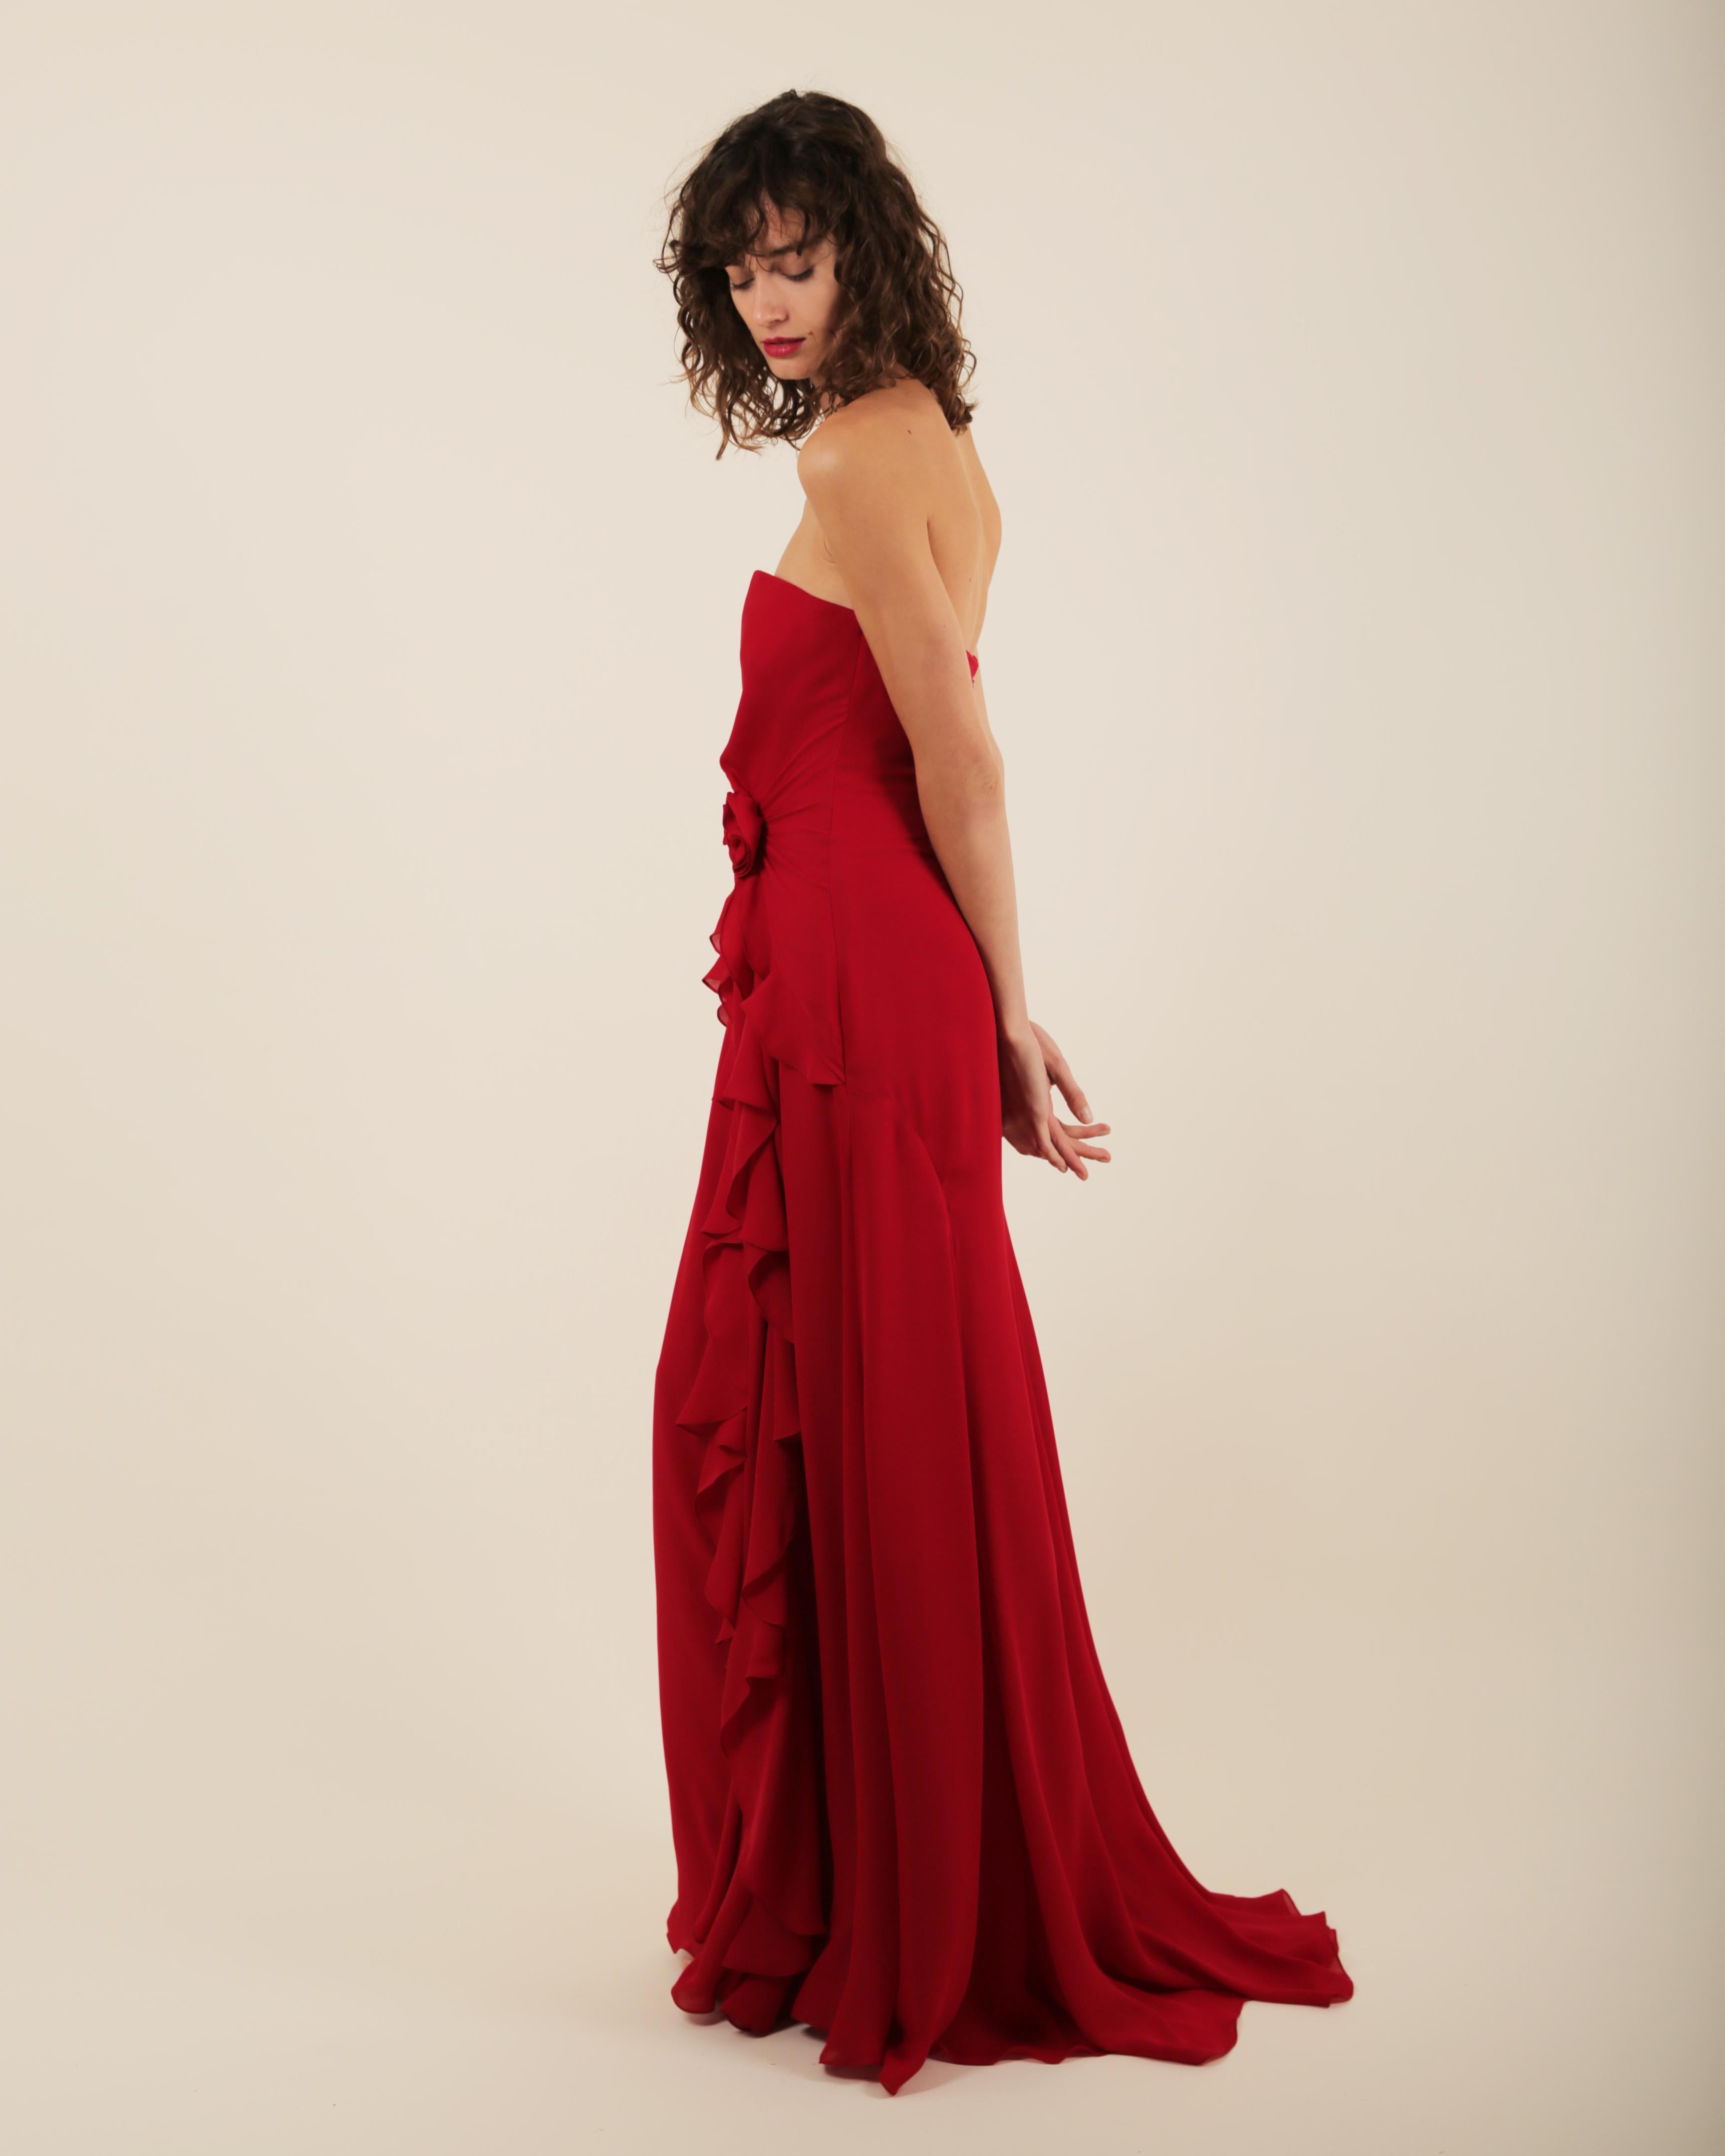 Ralph Lauren SS 2013 strapless bustier red sweetheart neck train silk gown dress 2